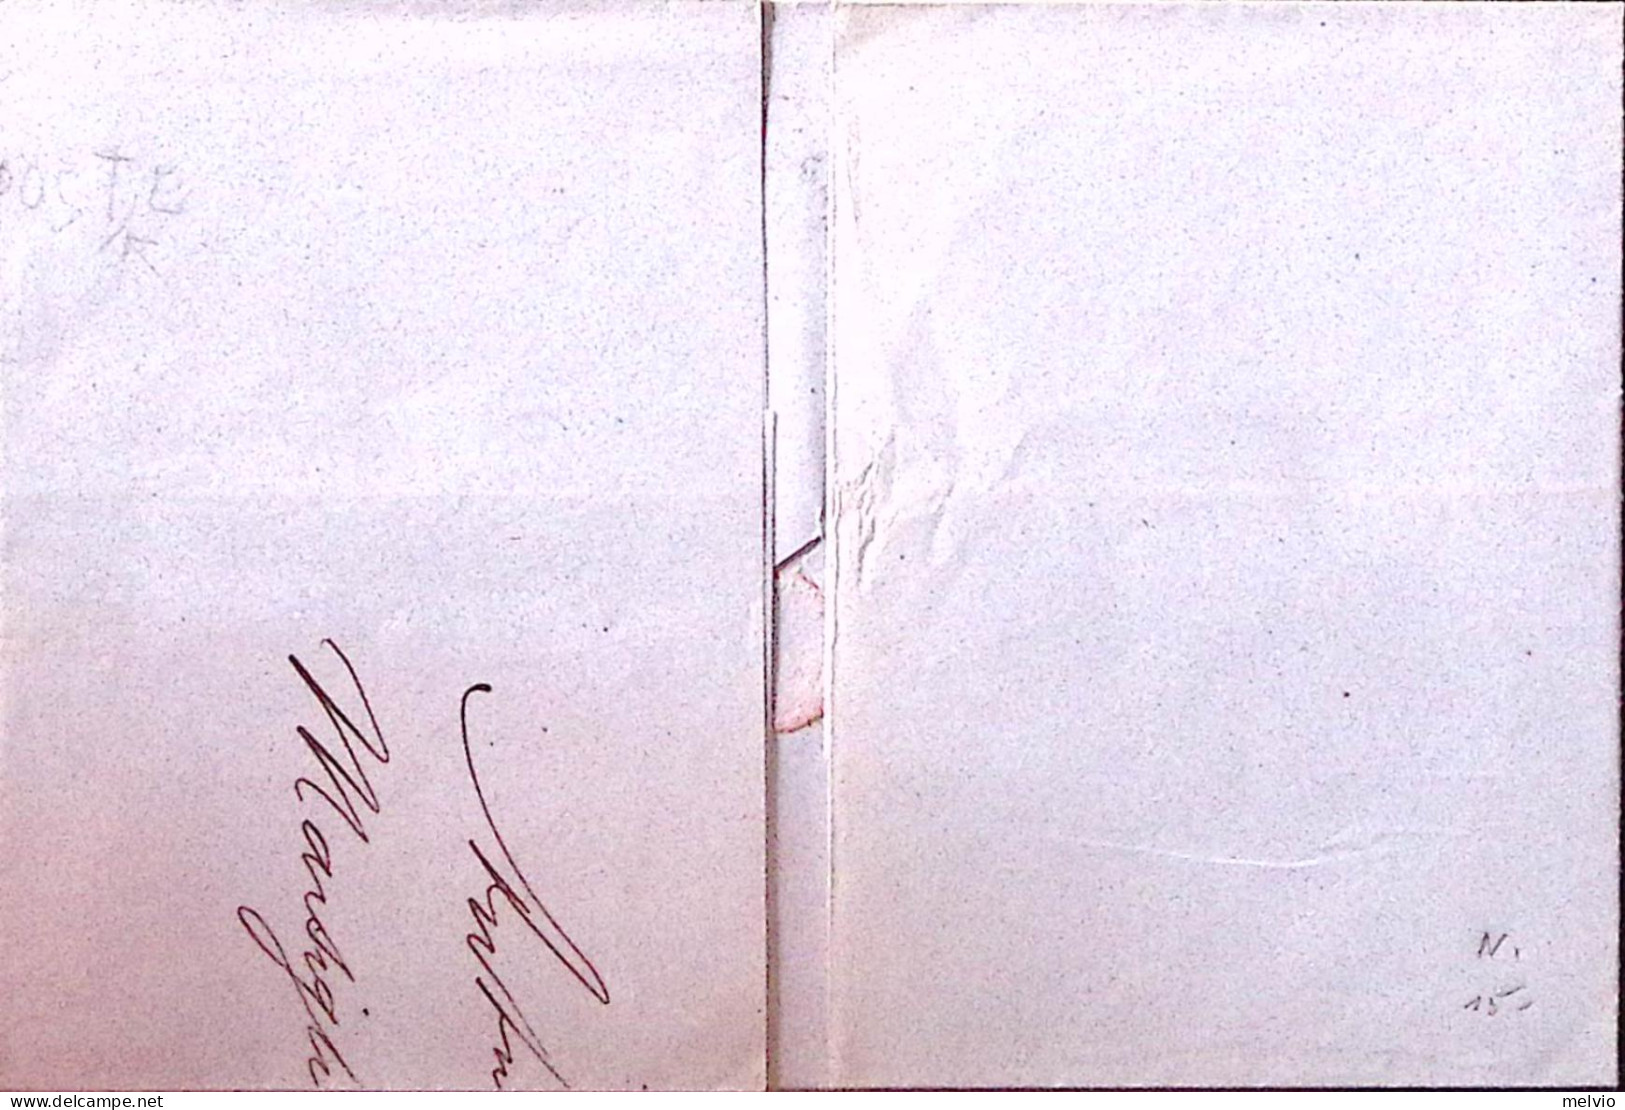 1871-Francia C.50 (69) Su Soprascritta Marsiglia (7.5) Per Napoli - 1863-1870 Napoleon III With Laurels